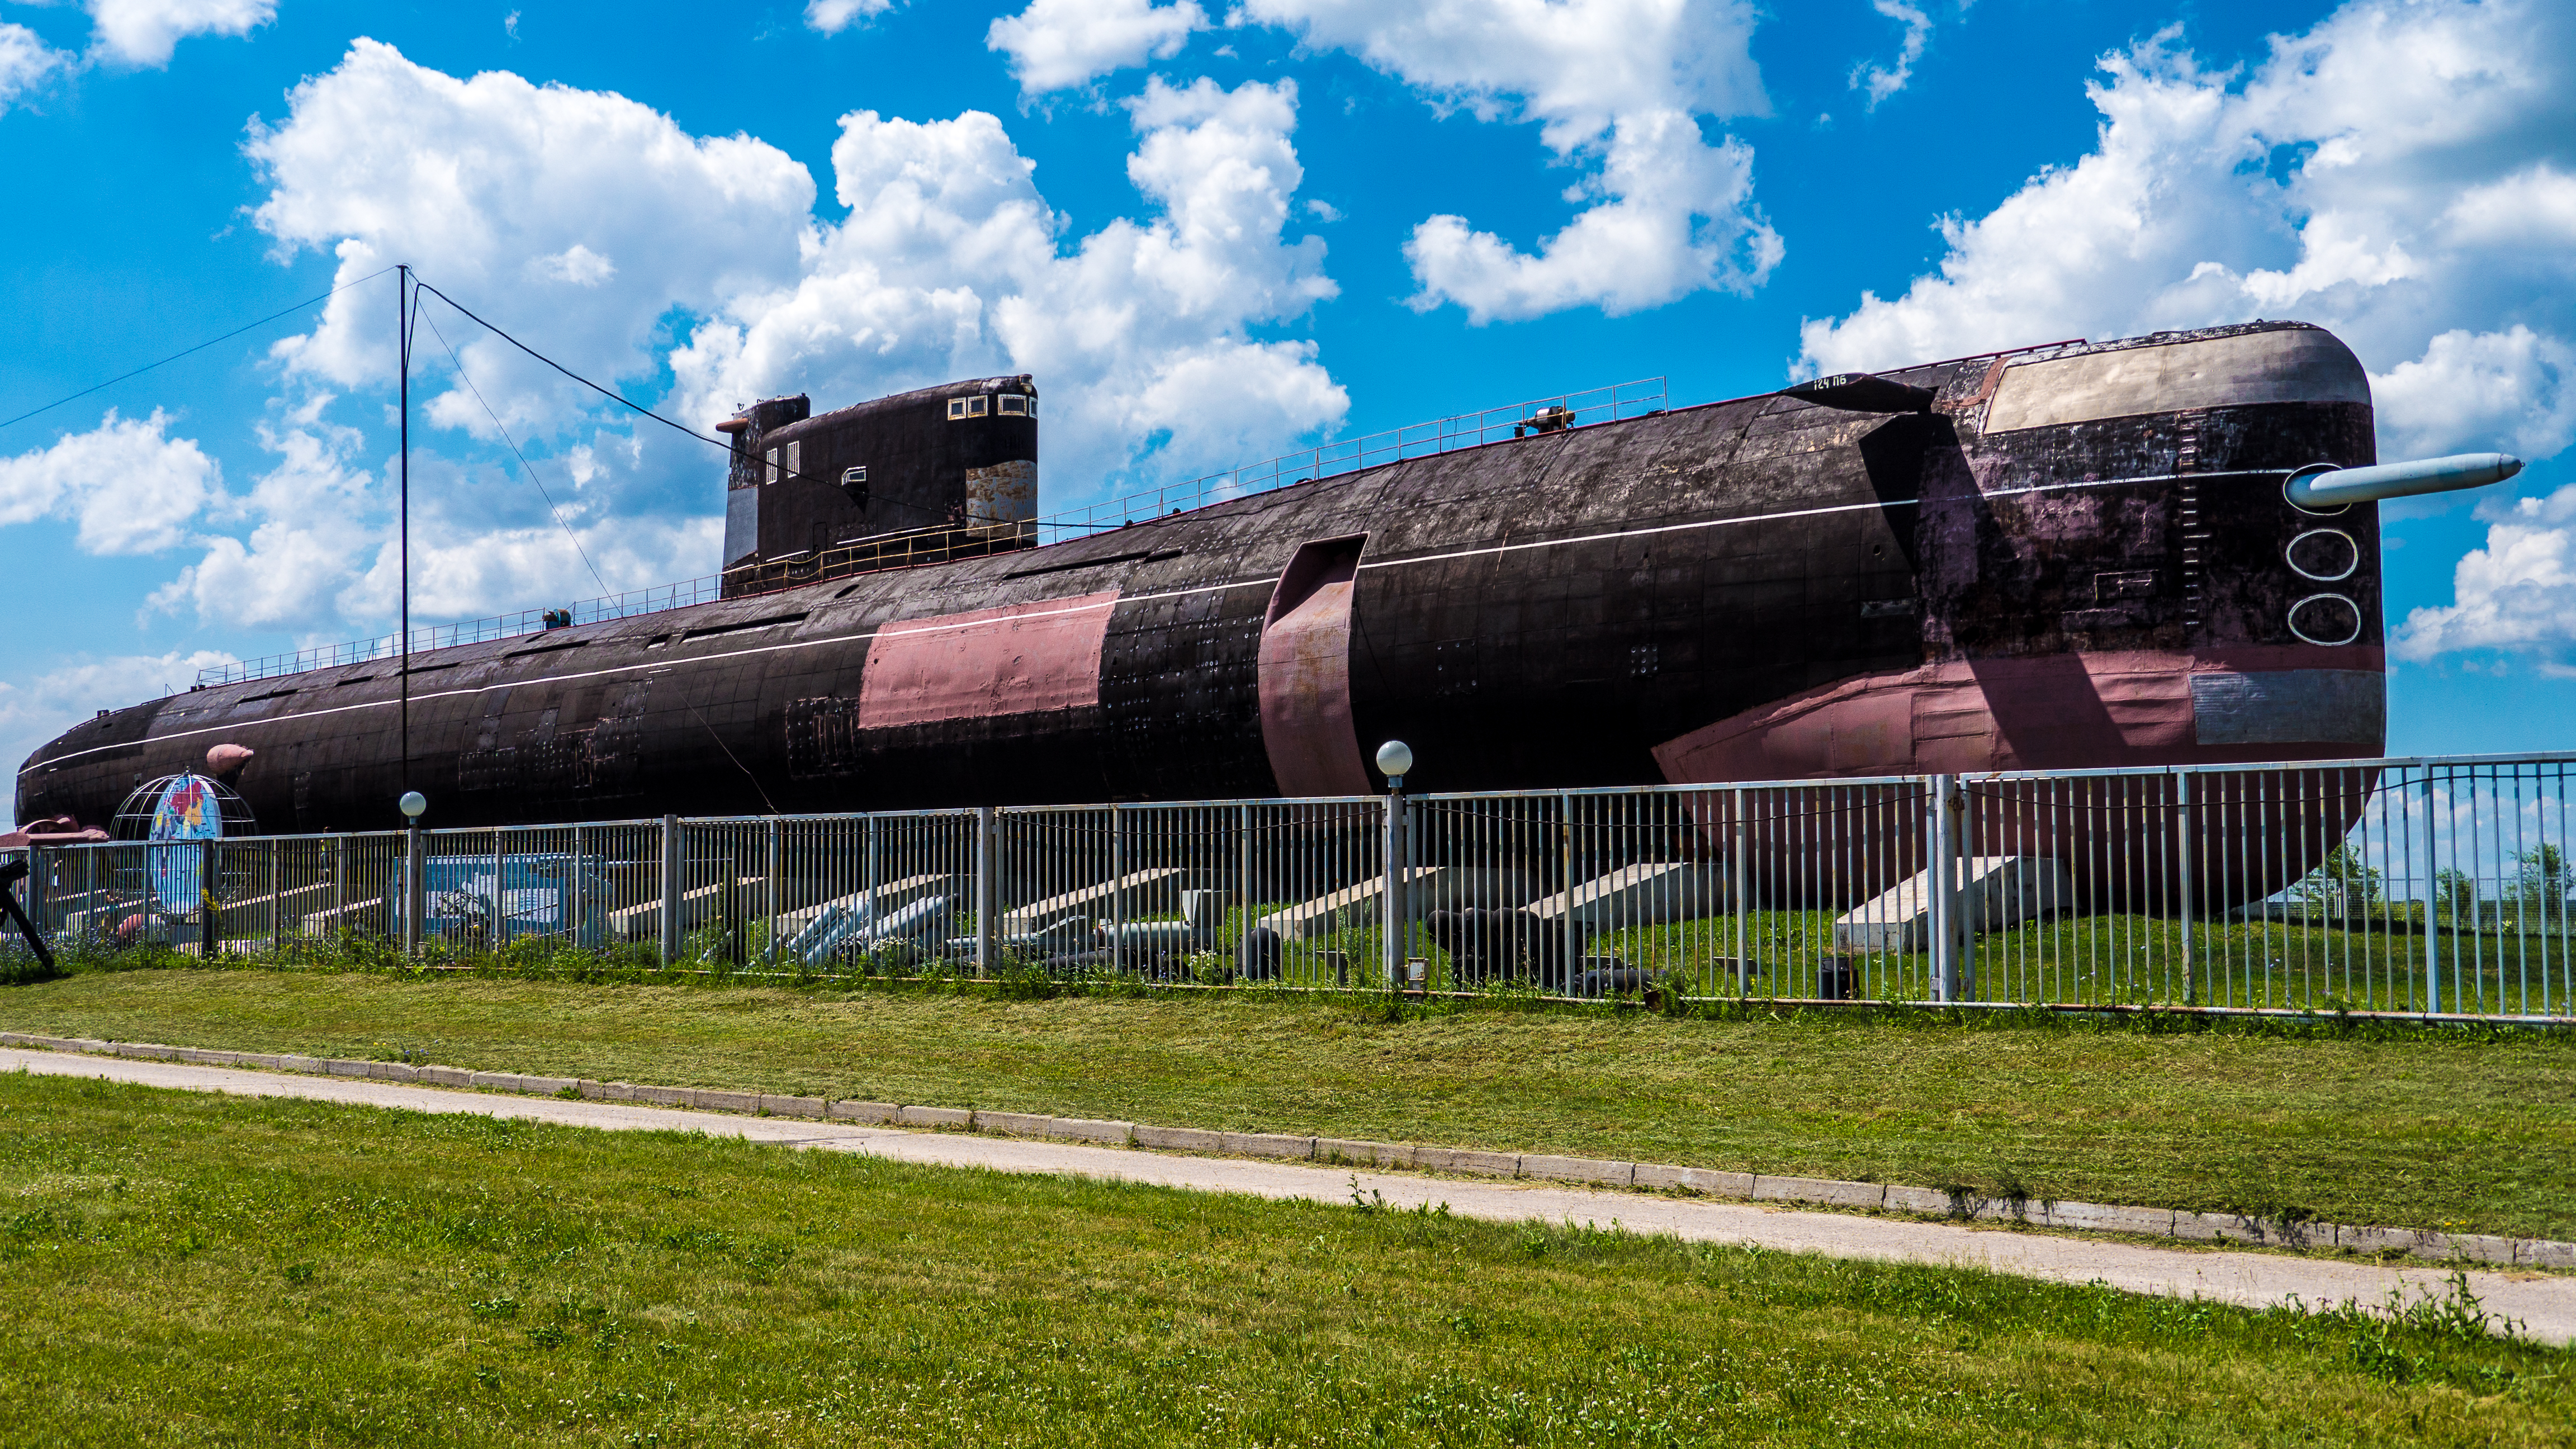 музей в тольятти с подводной лодкой